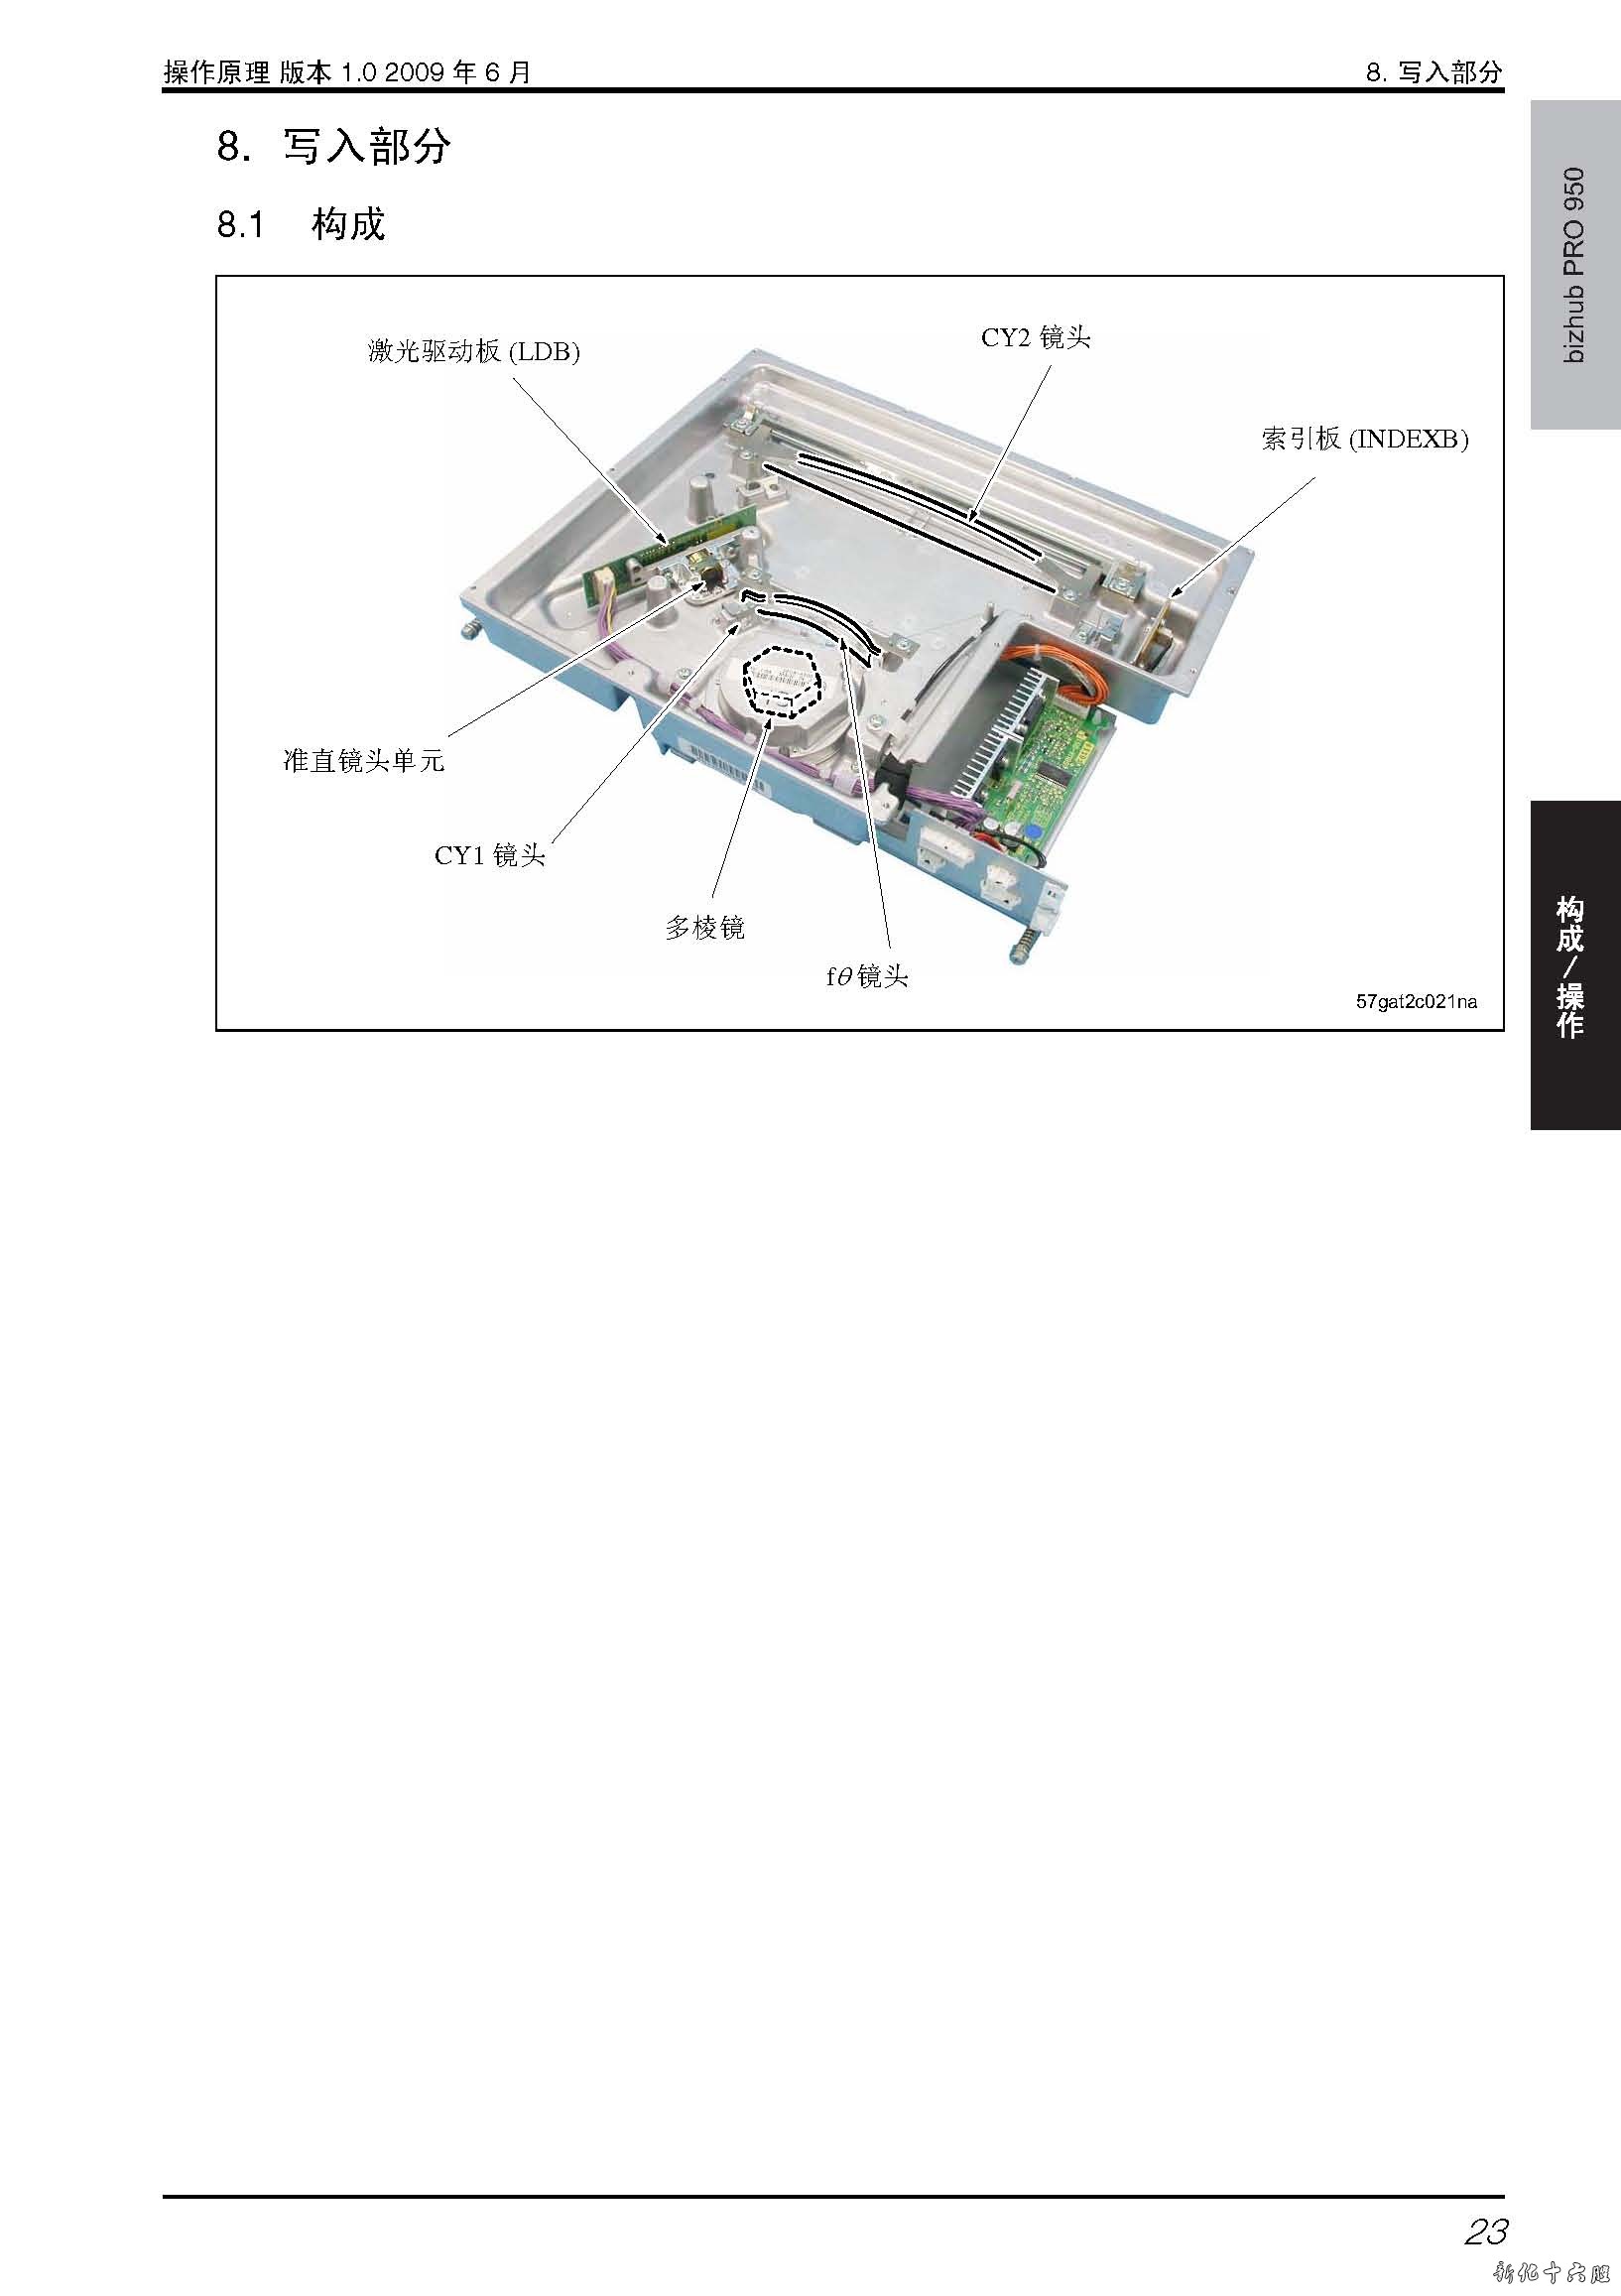 柯美 bizhub PRO 950 复印机中文维修手册-2.jpg